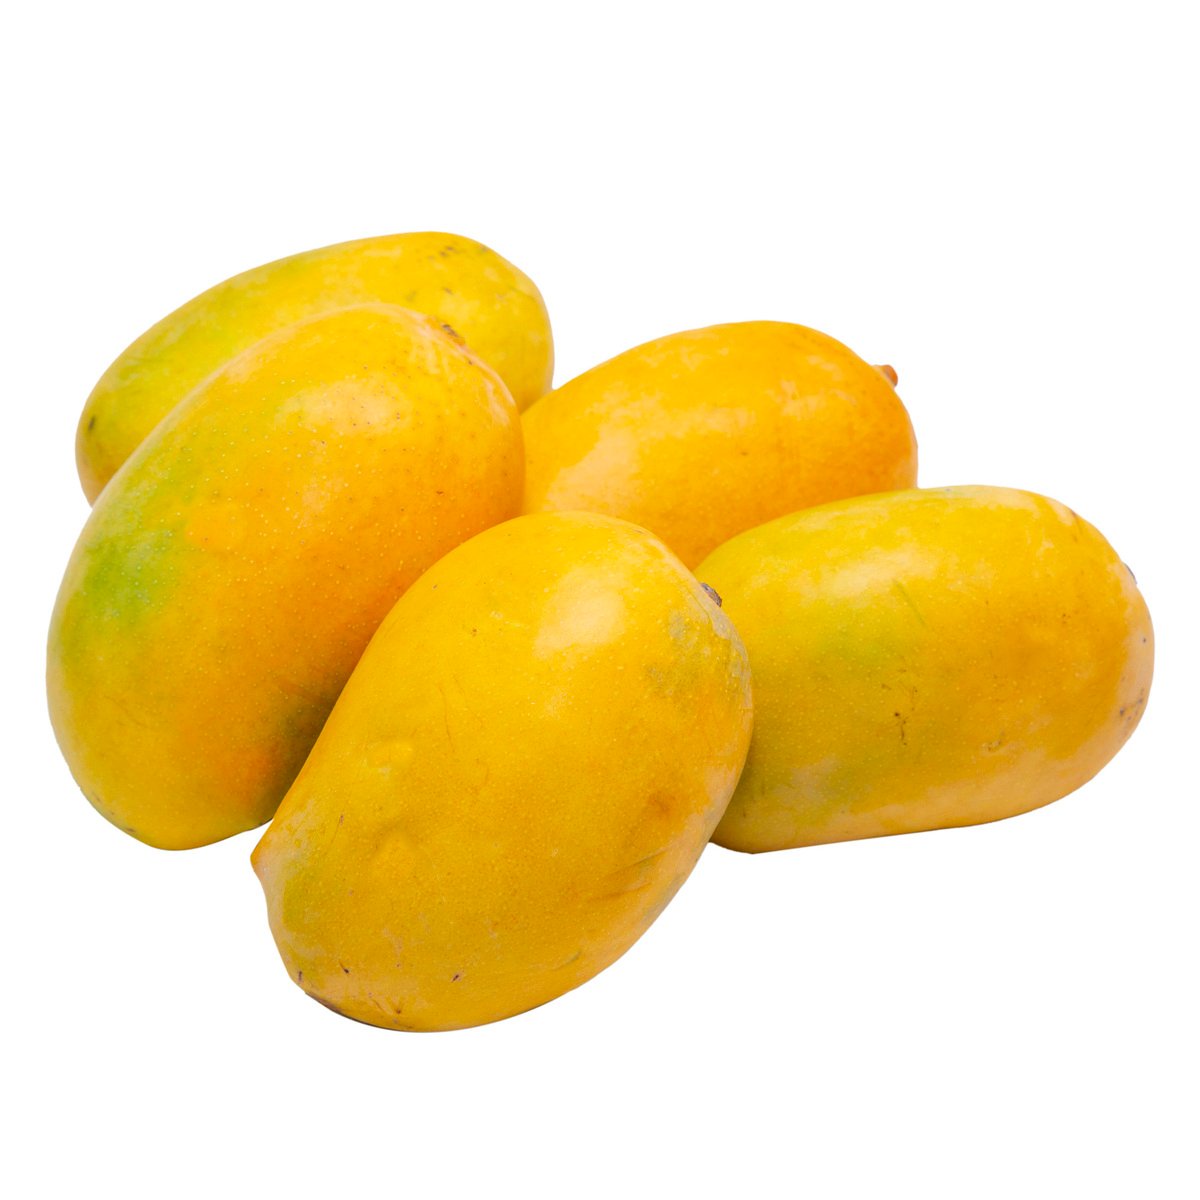 Buy Mango Kesar 1 kg Online at Best Price | Mangoes | Lulu Kuwait in UAE